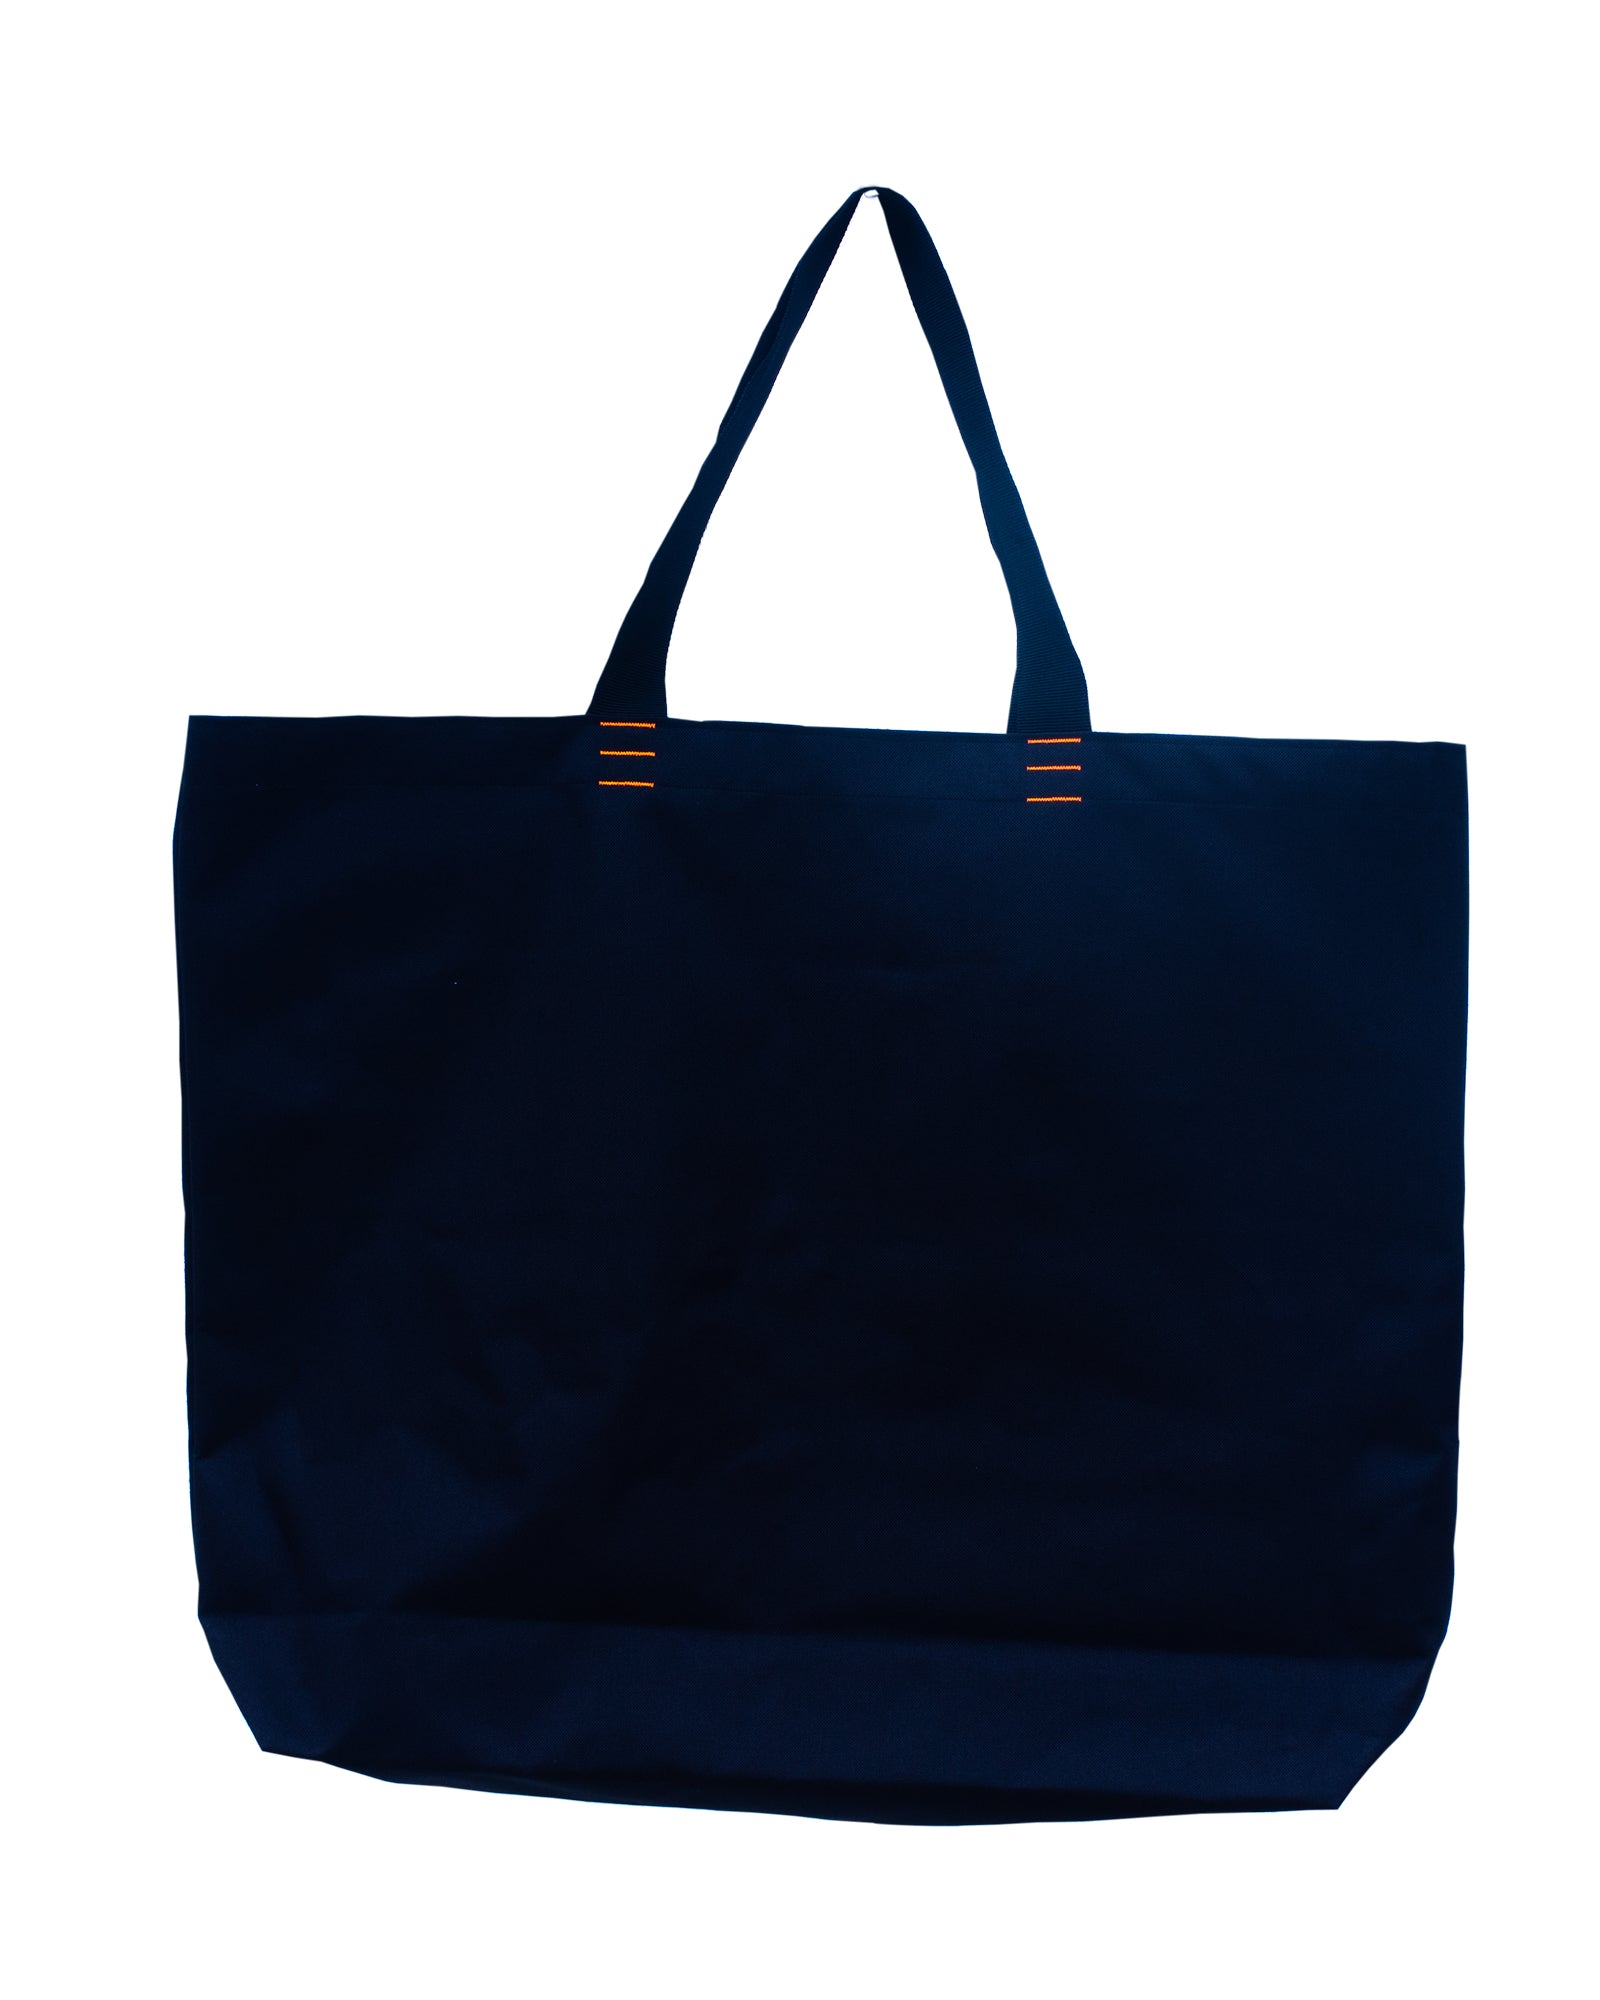 BIGBLACK BAG, design No 3